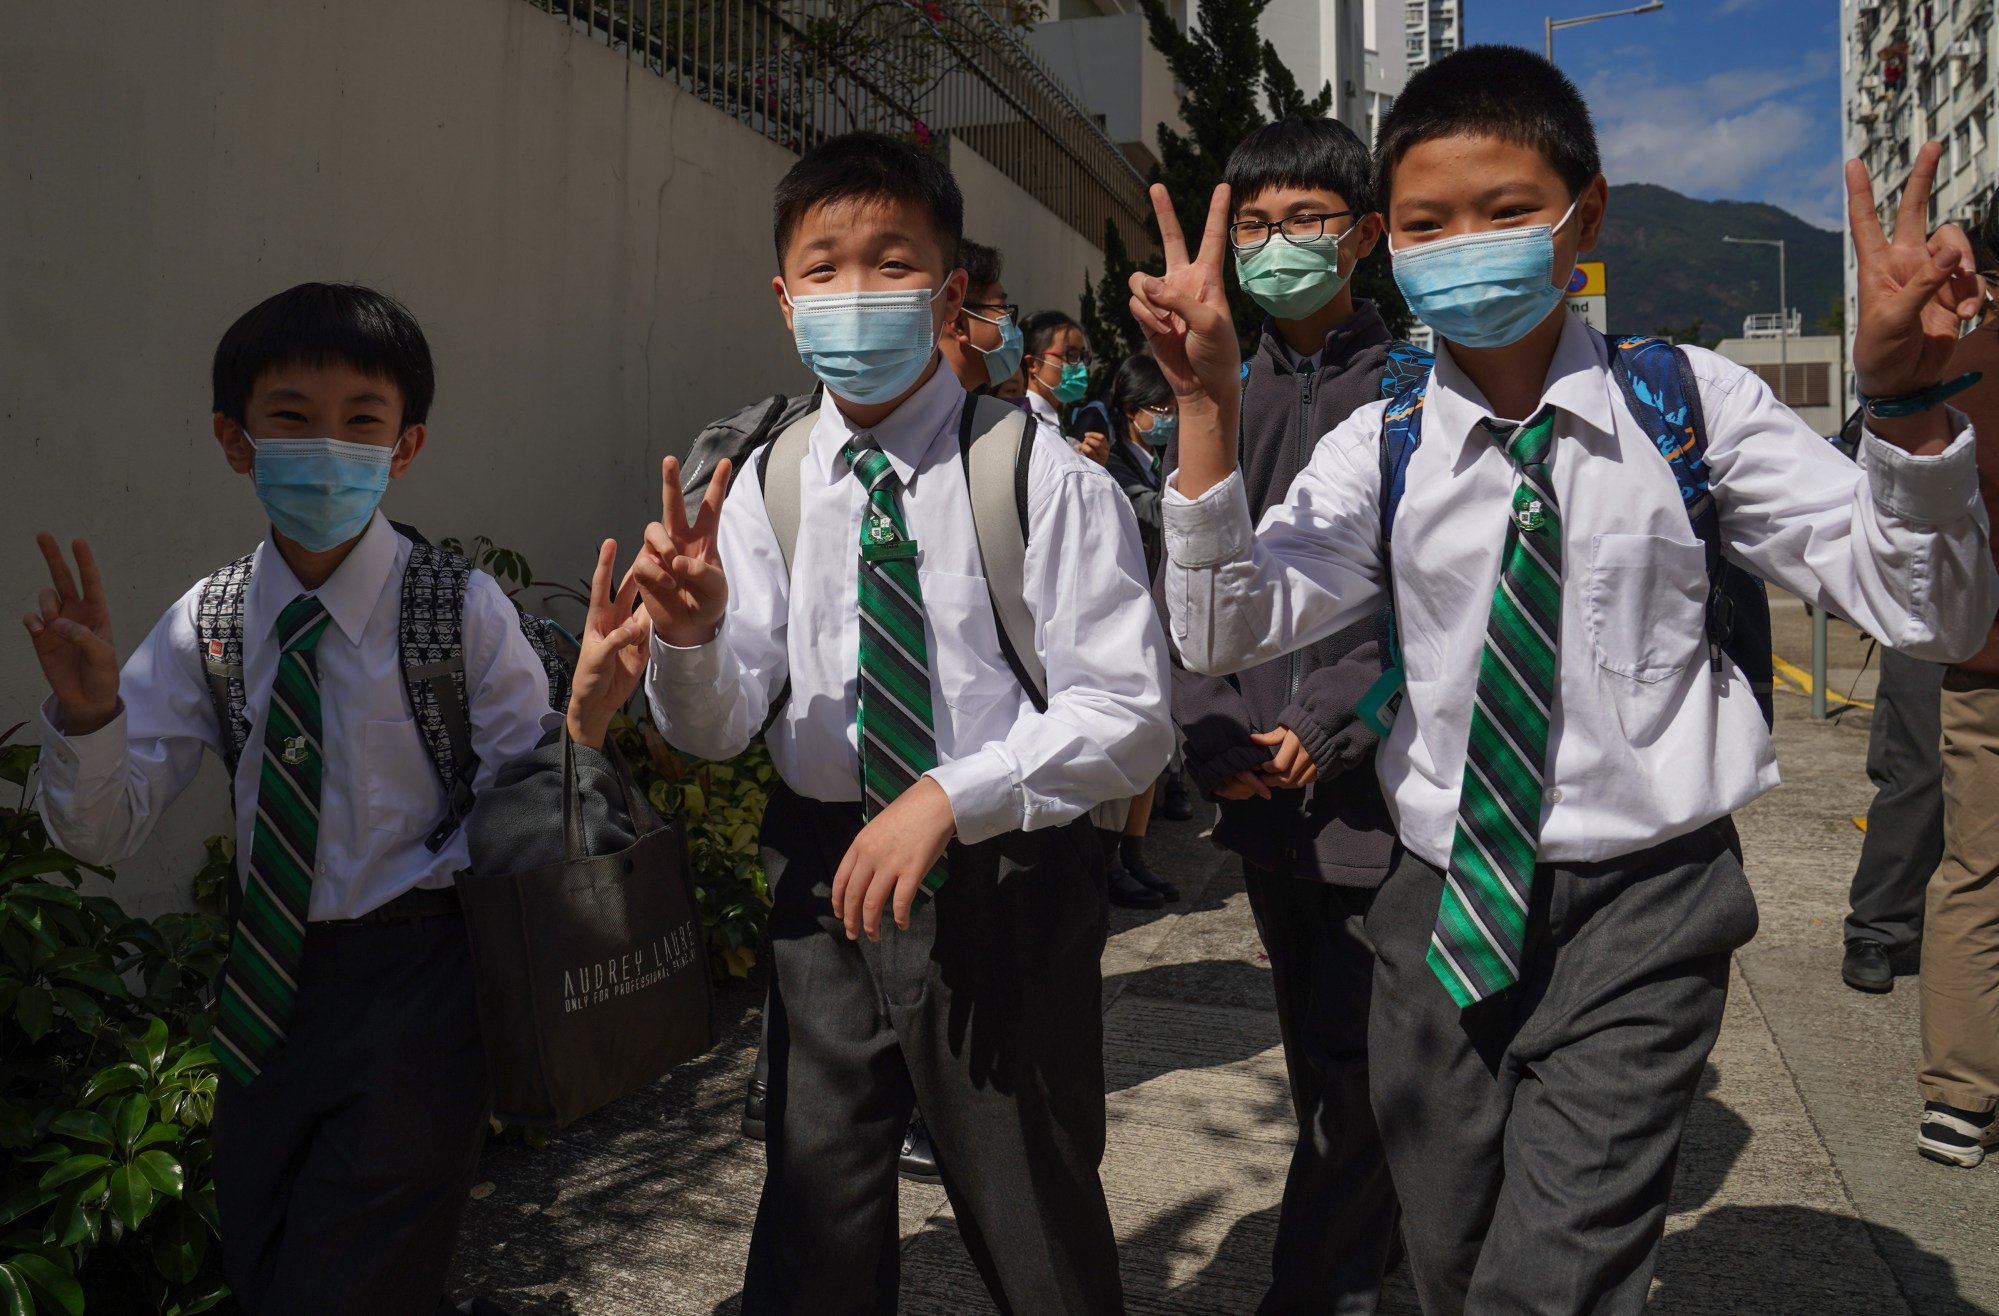 Secondary school students in Hong Kong. Photo: Sam Tsang